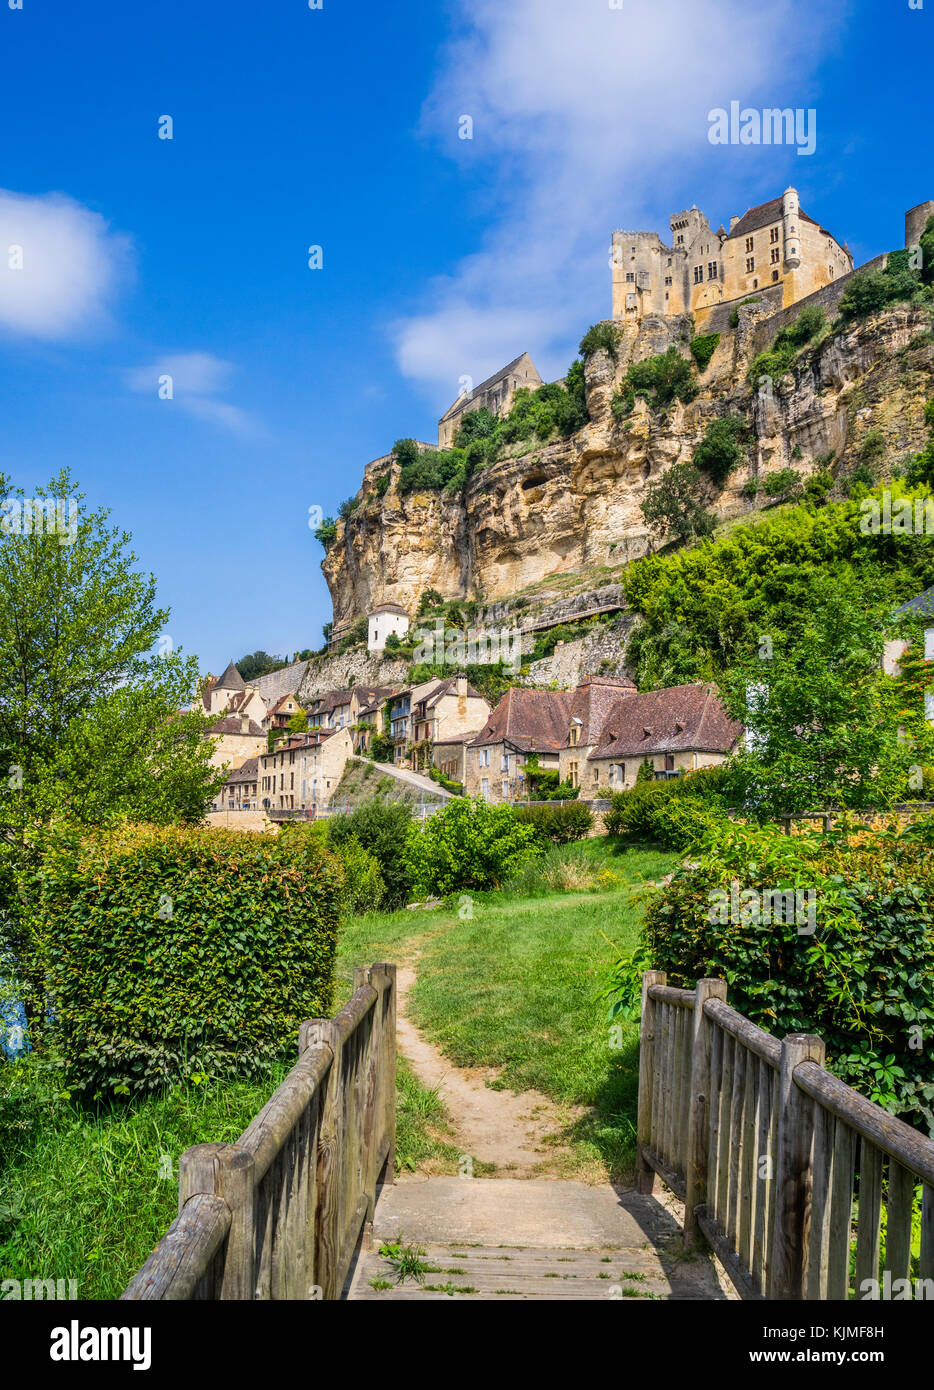 Francia, dipartimento di Dordogne, Beynac-et-Cazenac, il borgo medievale di Chateau de Beynac salendo su una roccia calcarea sopra il fiume Dordogna Foto Stock